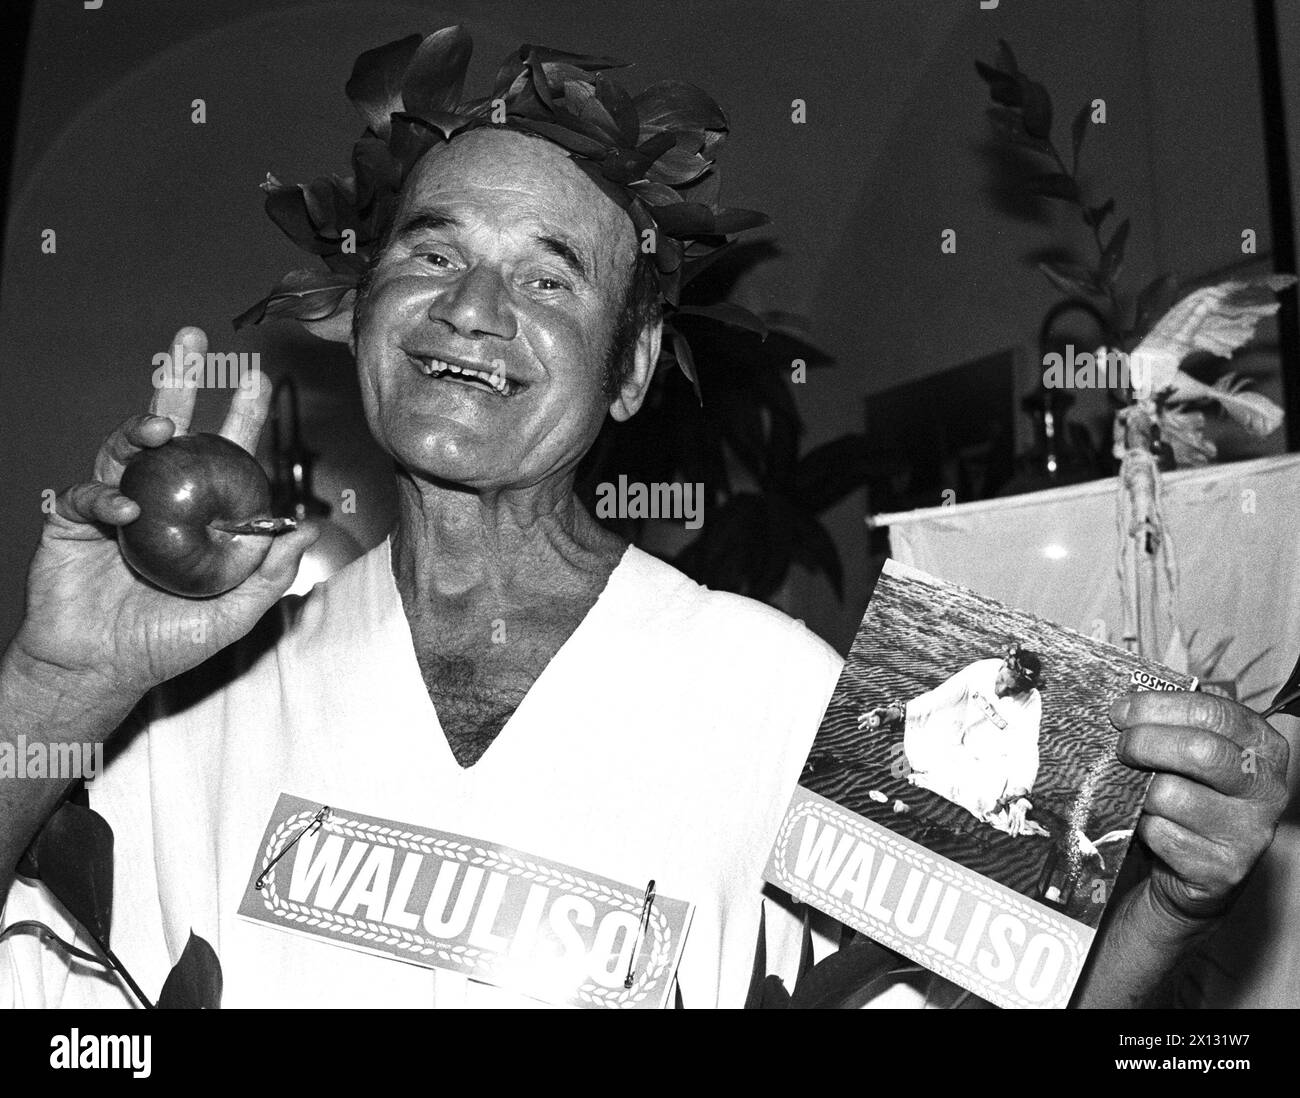 La photo a été prise le 28 octobre 1987 et montre le célèbre Waluliso 'original' viennois présentant son nouveau single 'Waluliso Paradise' dans un pub étudiant. - 19871028 PD0004 - Rechteinfo : droits gérés (RM) Banque D'Images